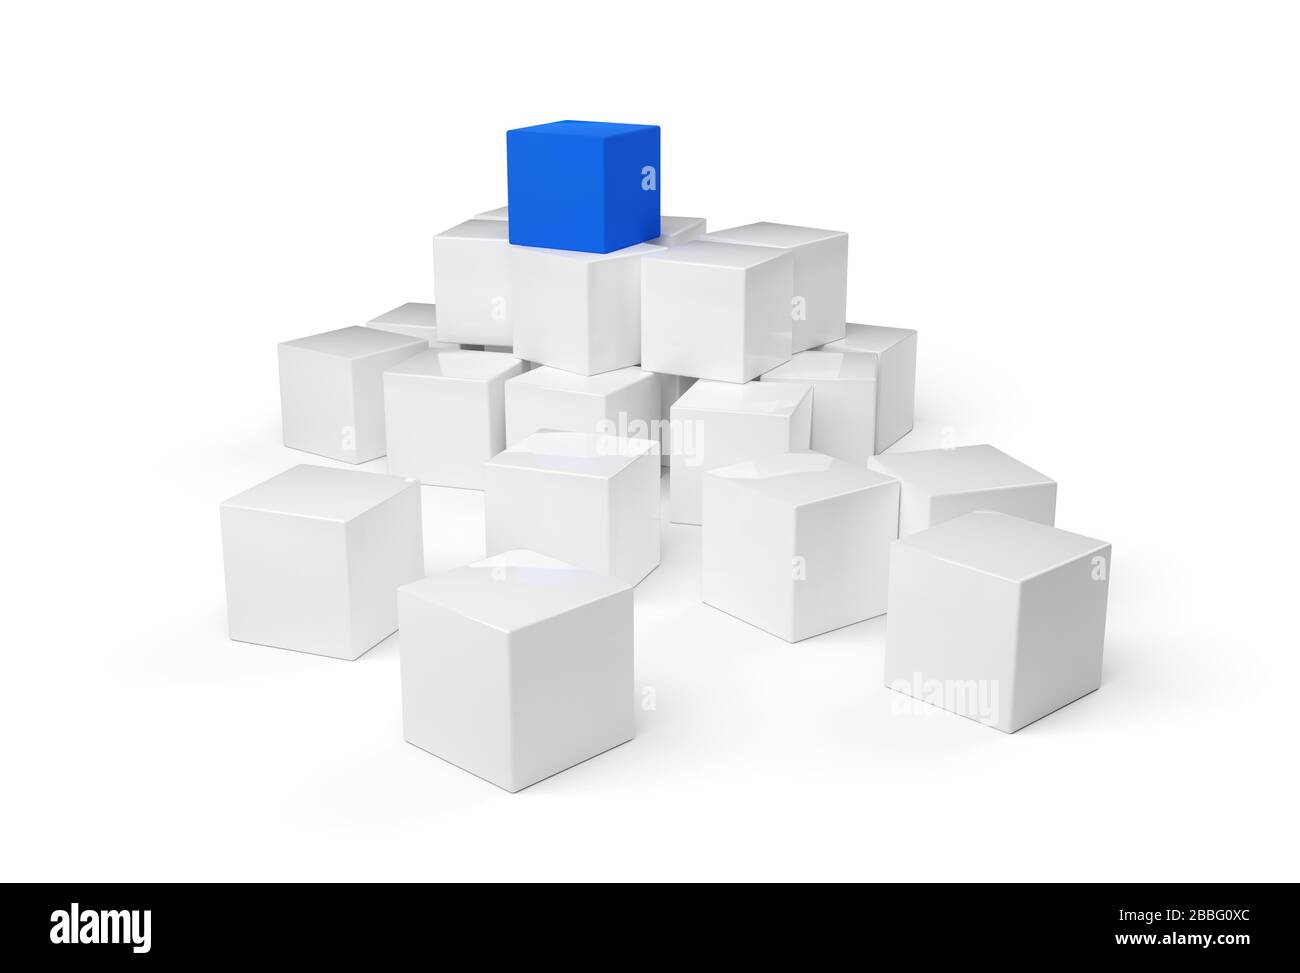 Blauer Würfel auf dem Haufen weißer Würfel über weißem Hintergrund - Softwaremodul, Teamarbeit oder das herausheben vom Crowd Leadership Konzept, 3D illust Stockfoto